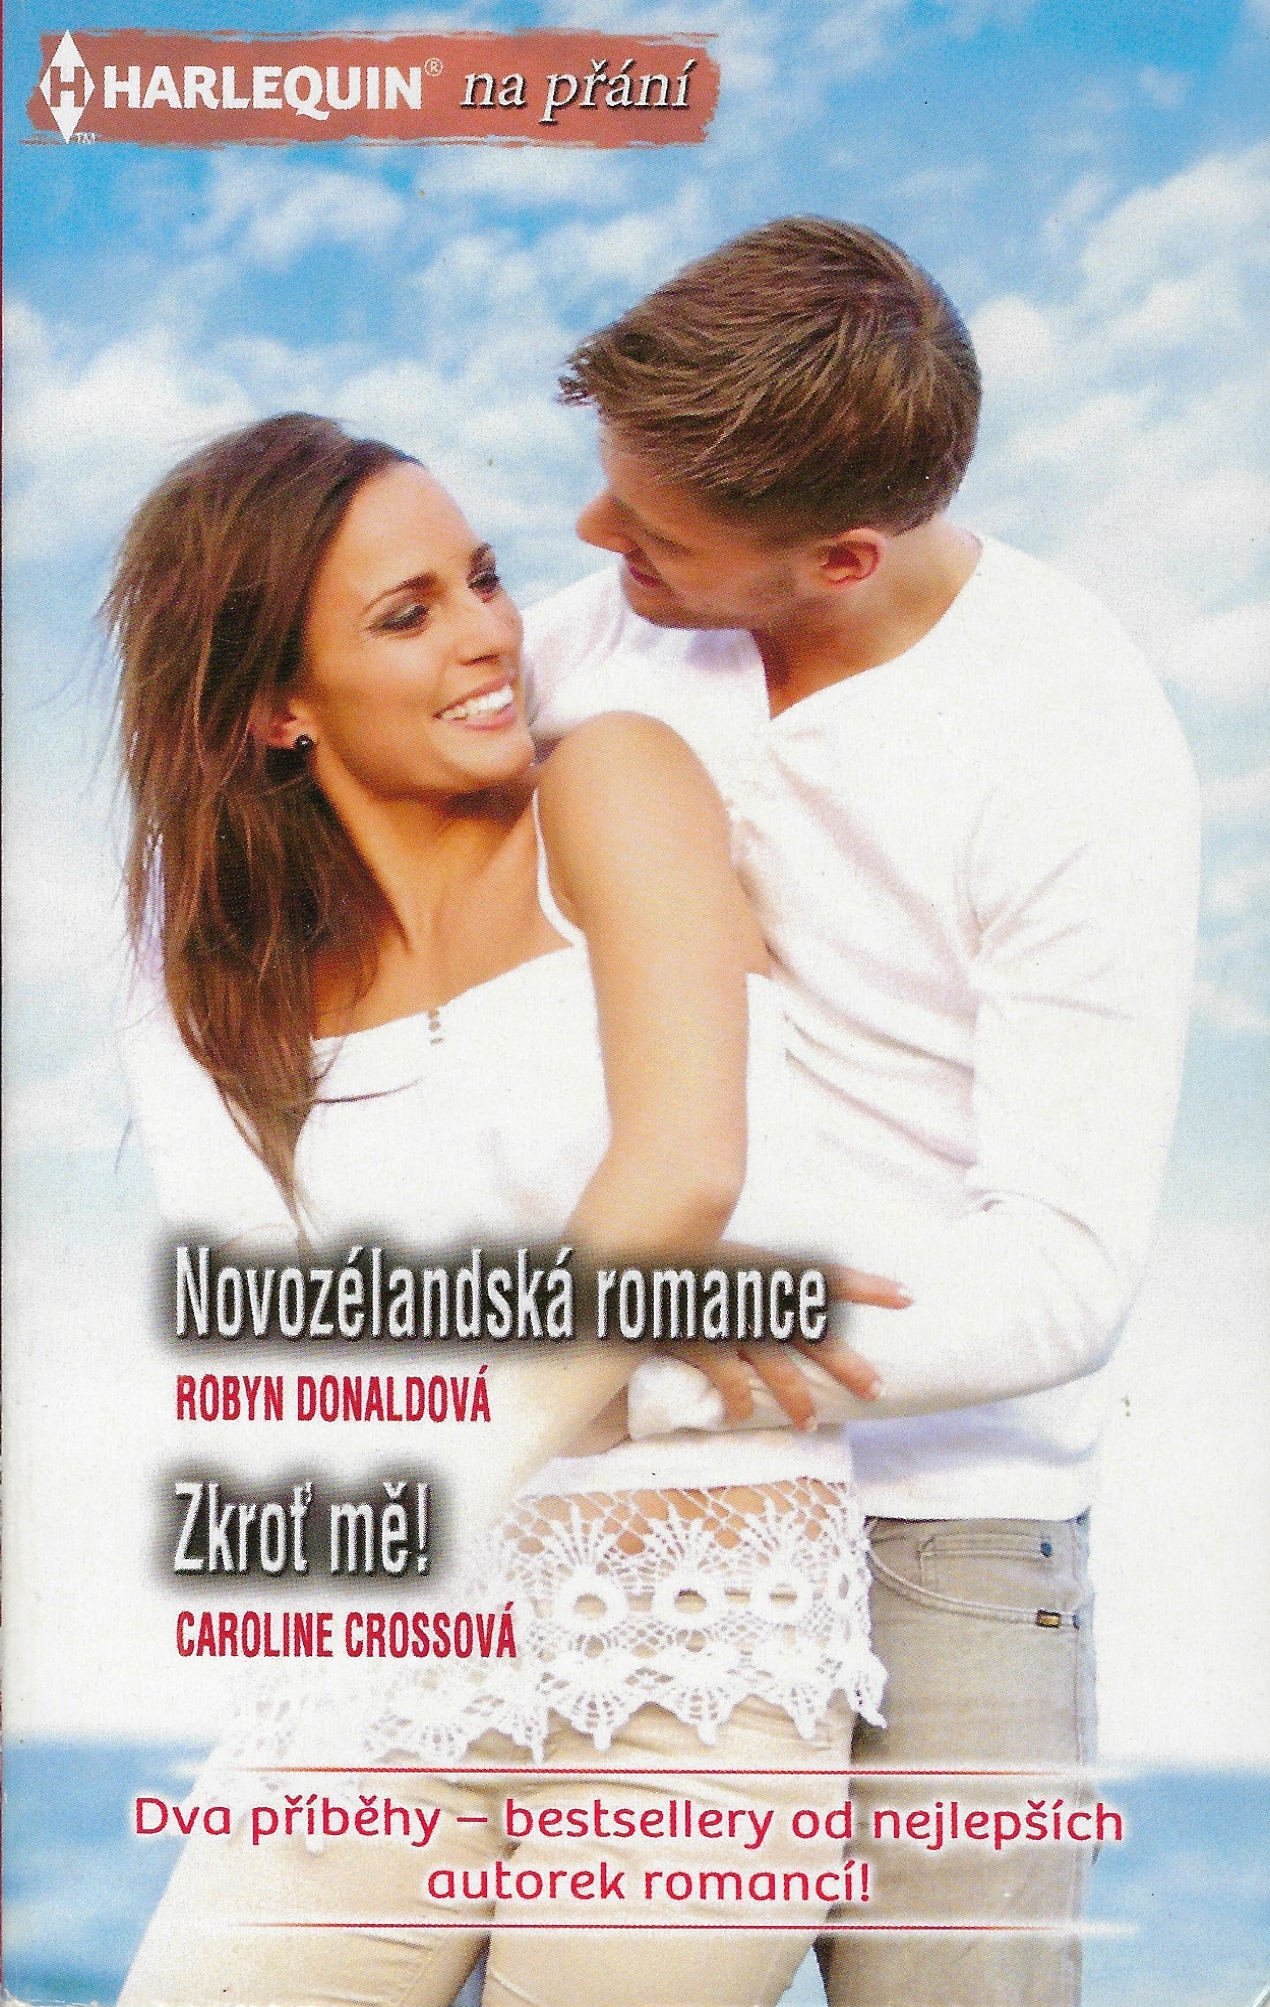 Harlequin na přání 429-Novozélandská romance, Zkroť mě!